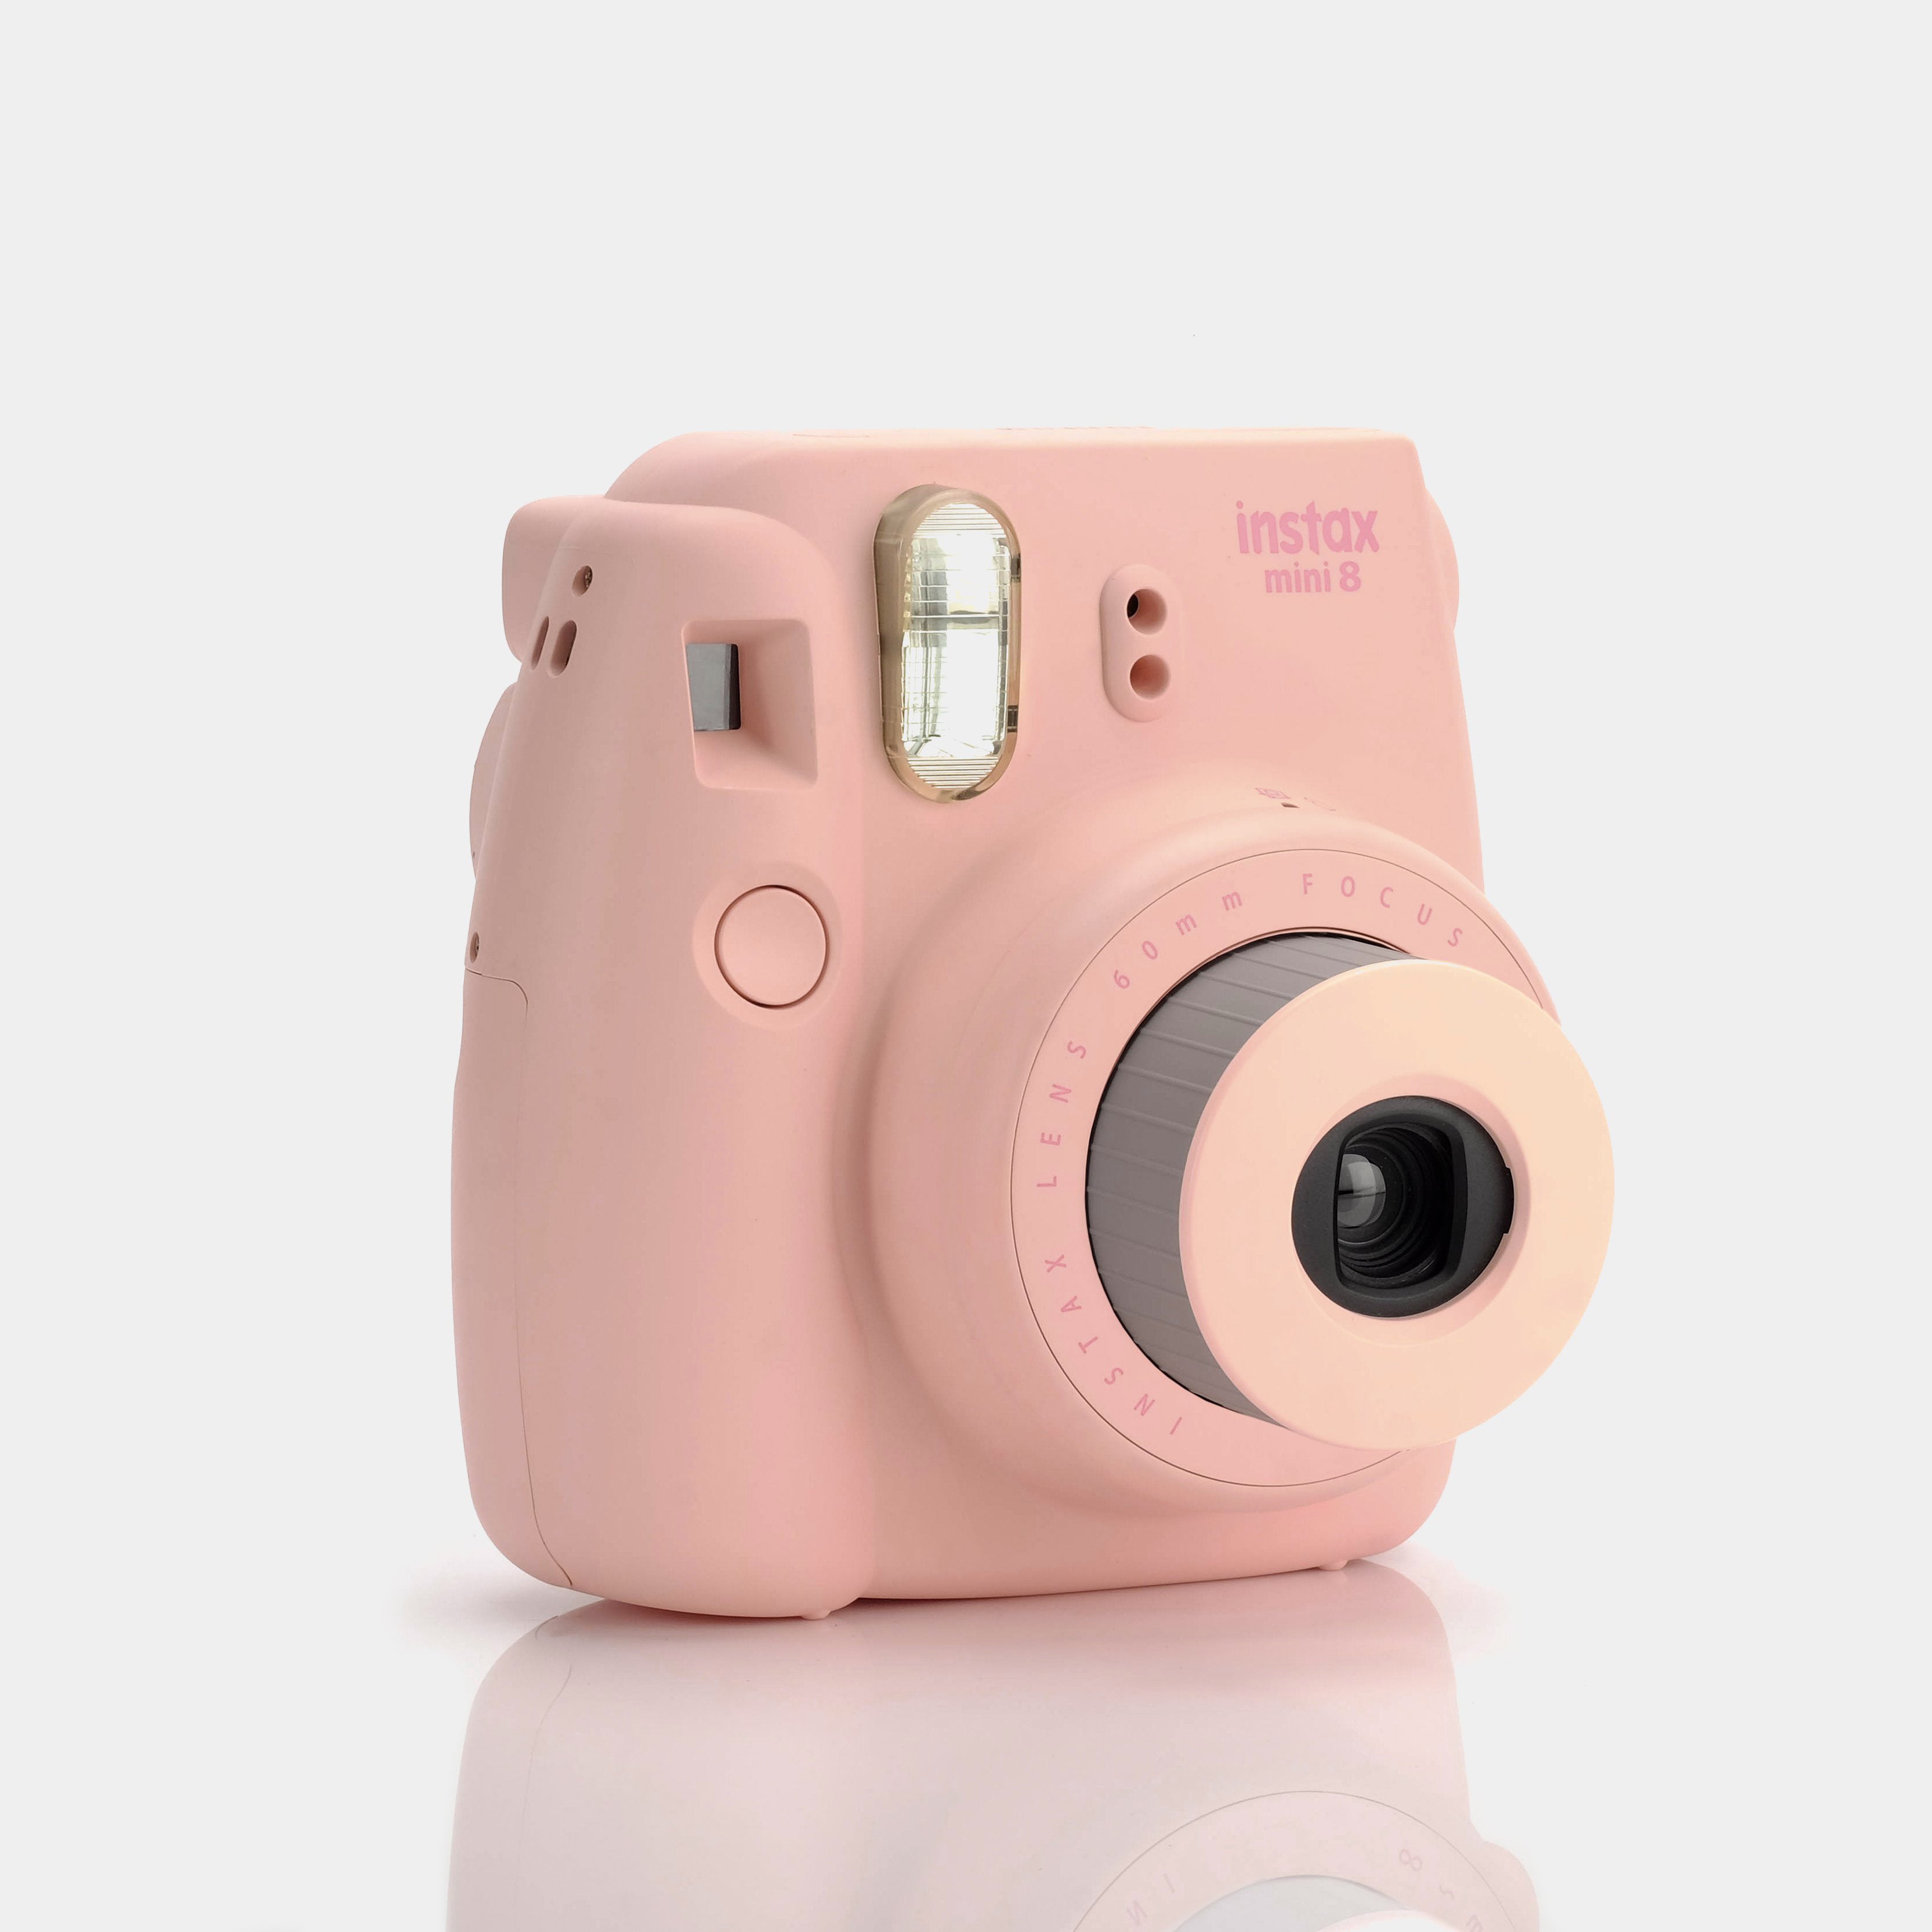 Fujifilm Instax Mini 8 Pink Instant Film Camera - Refurbished